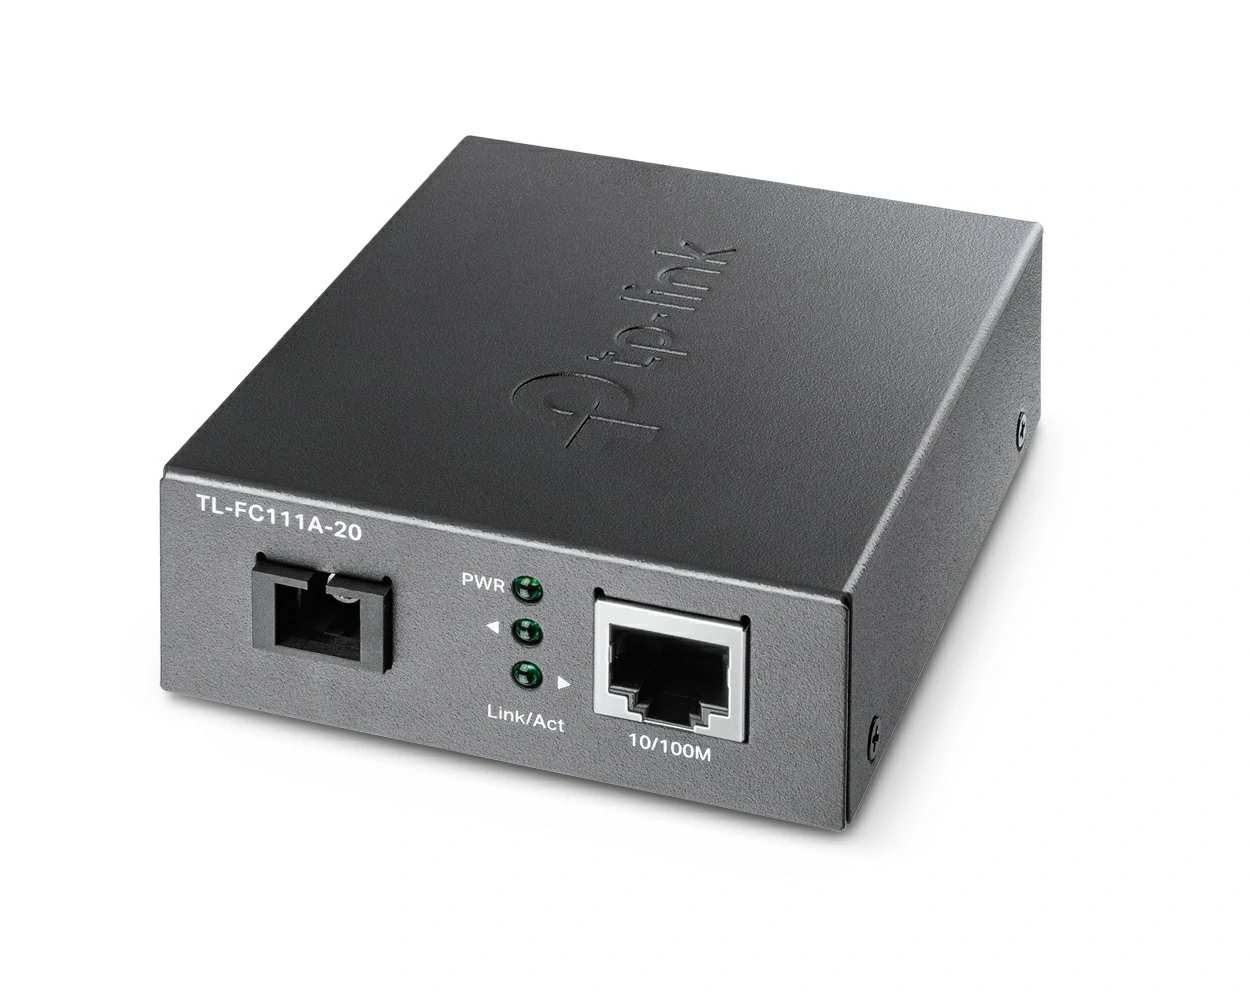 TL-FC111A-20 10/100 Mbps WDM Media Converter 1